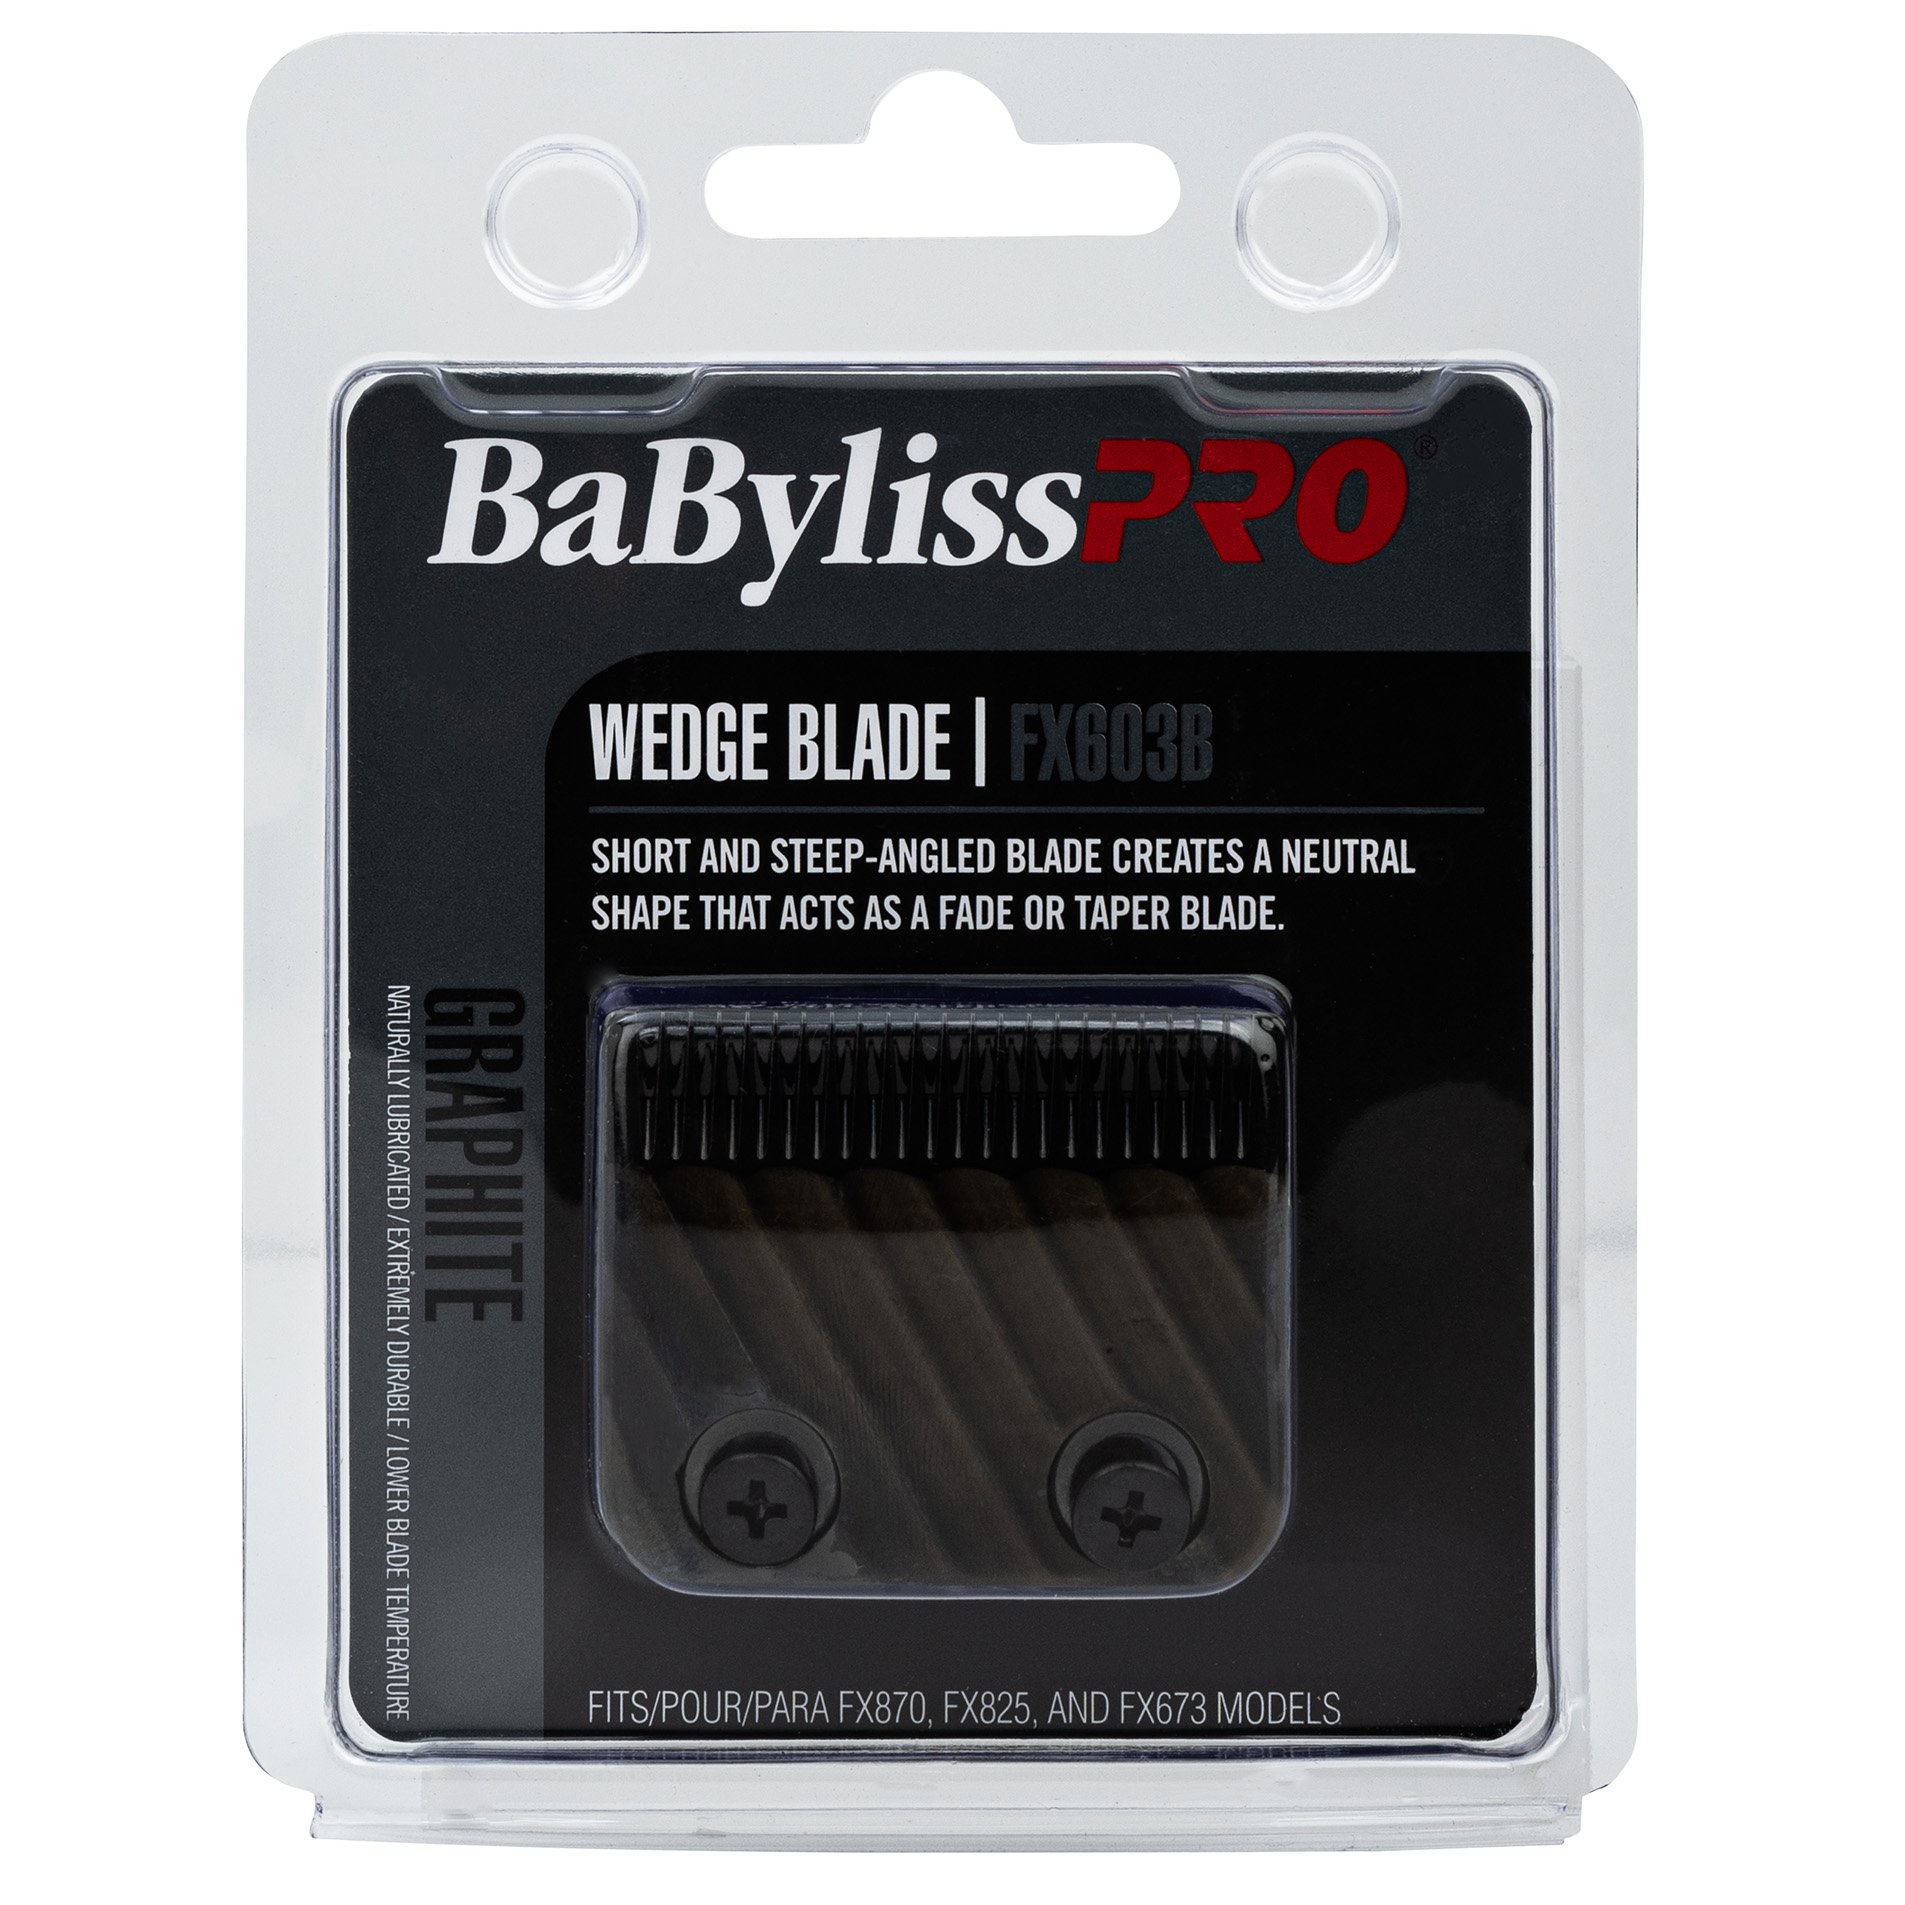 BaBylissPRO Hair Clipper Wedge Blade Graphite FX603B_2.jpg